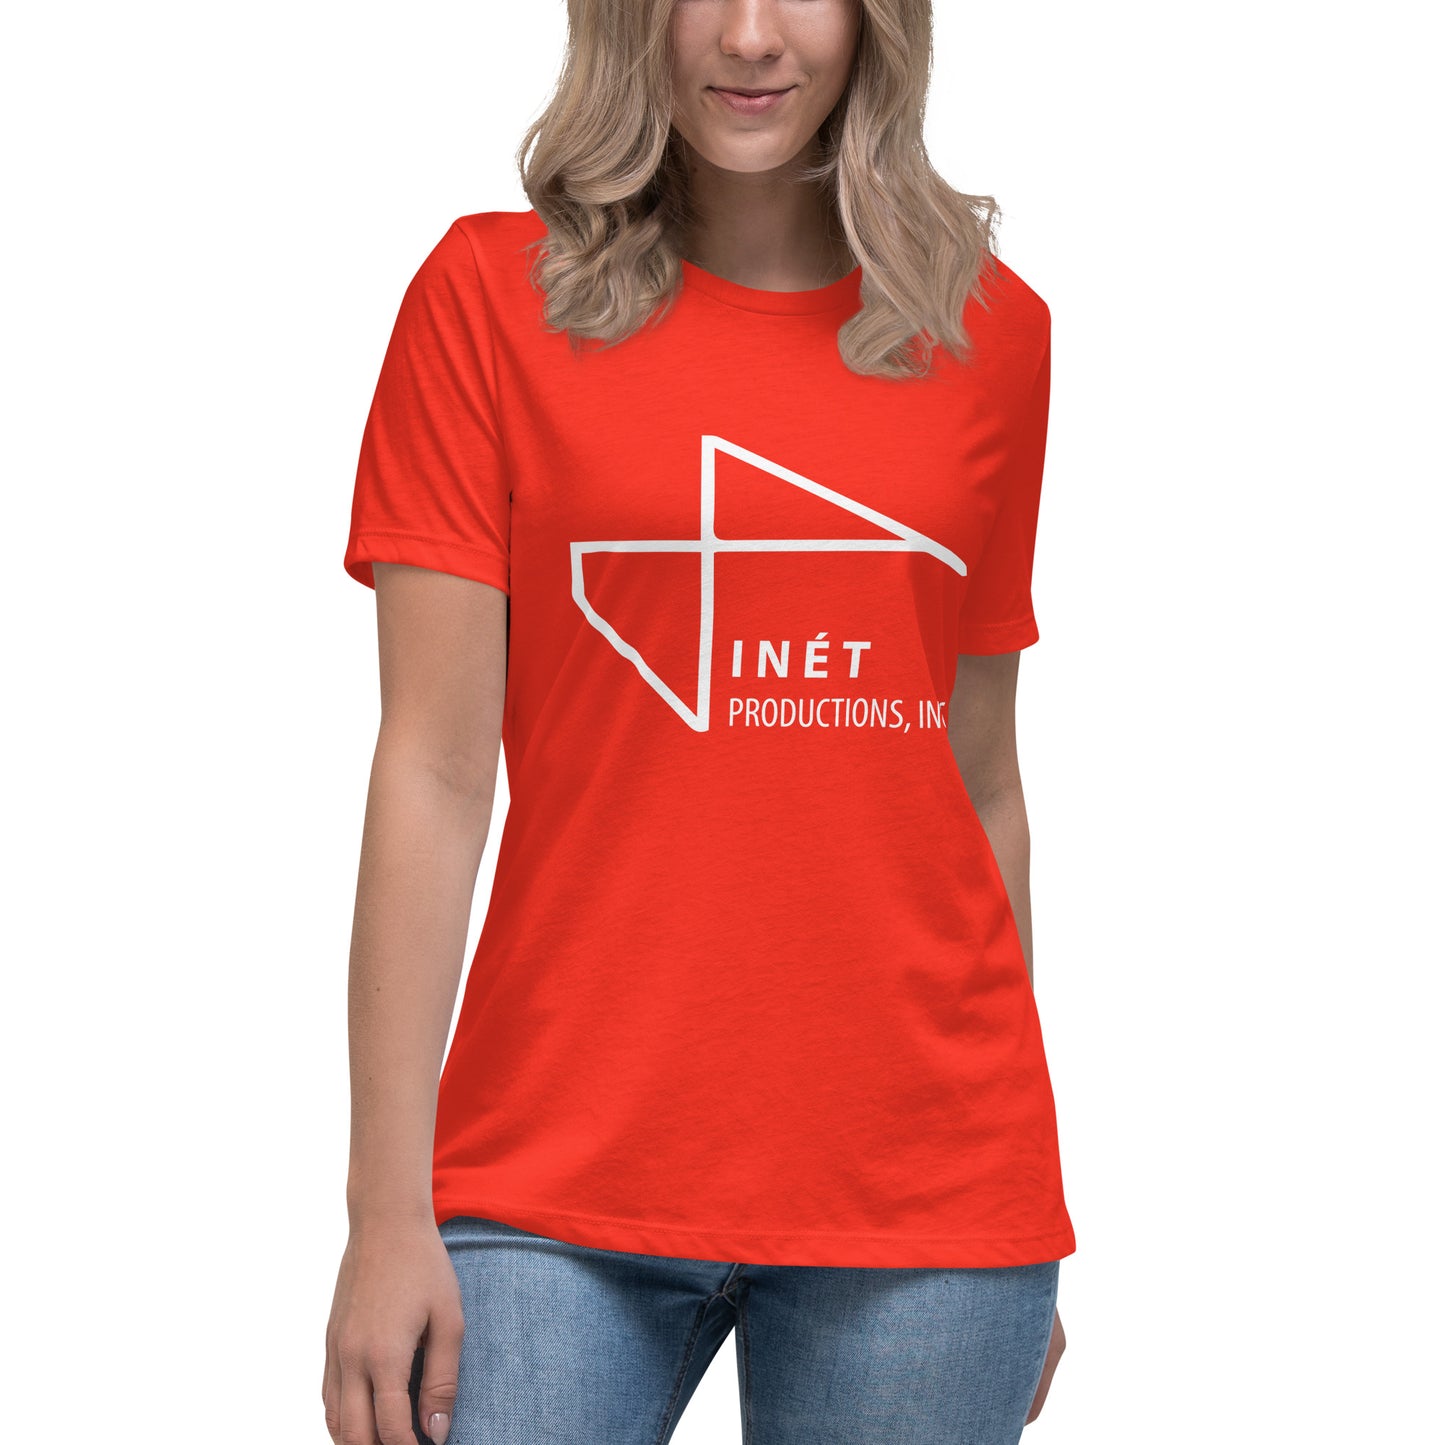 Inét Productions Women's Relaxed T-Shirt